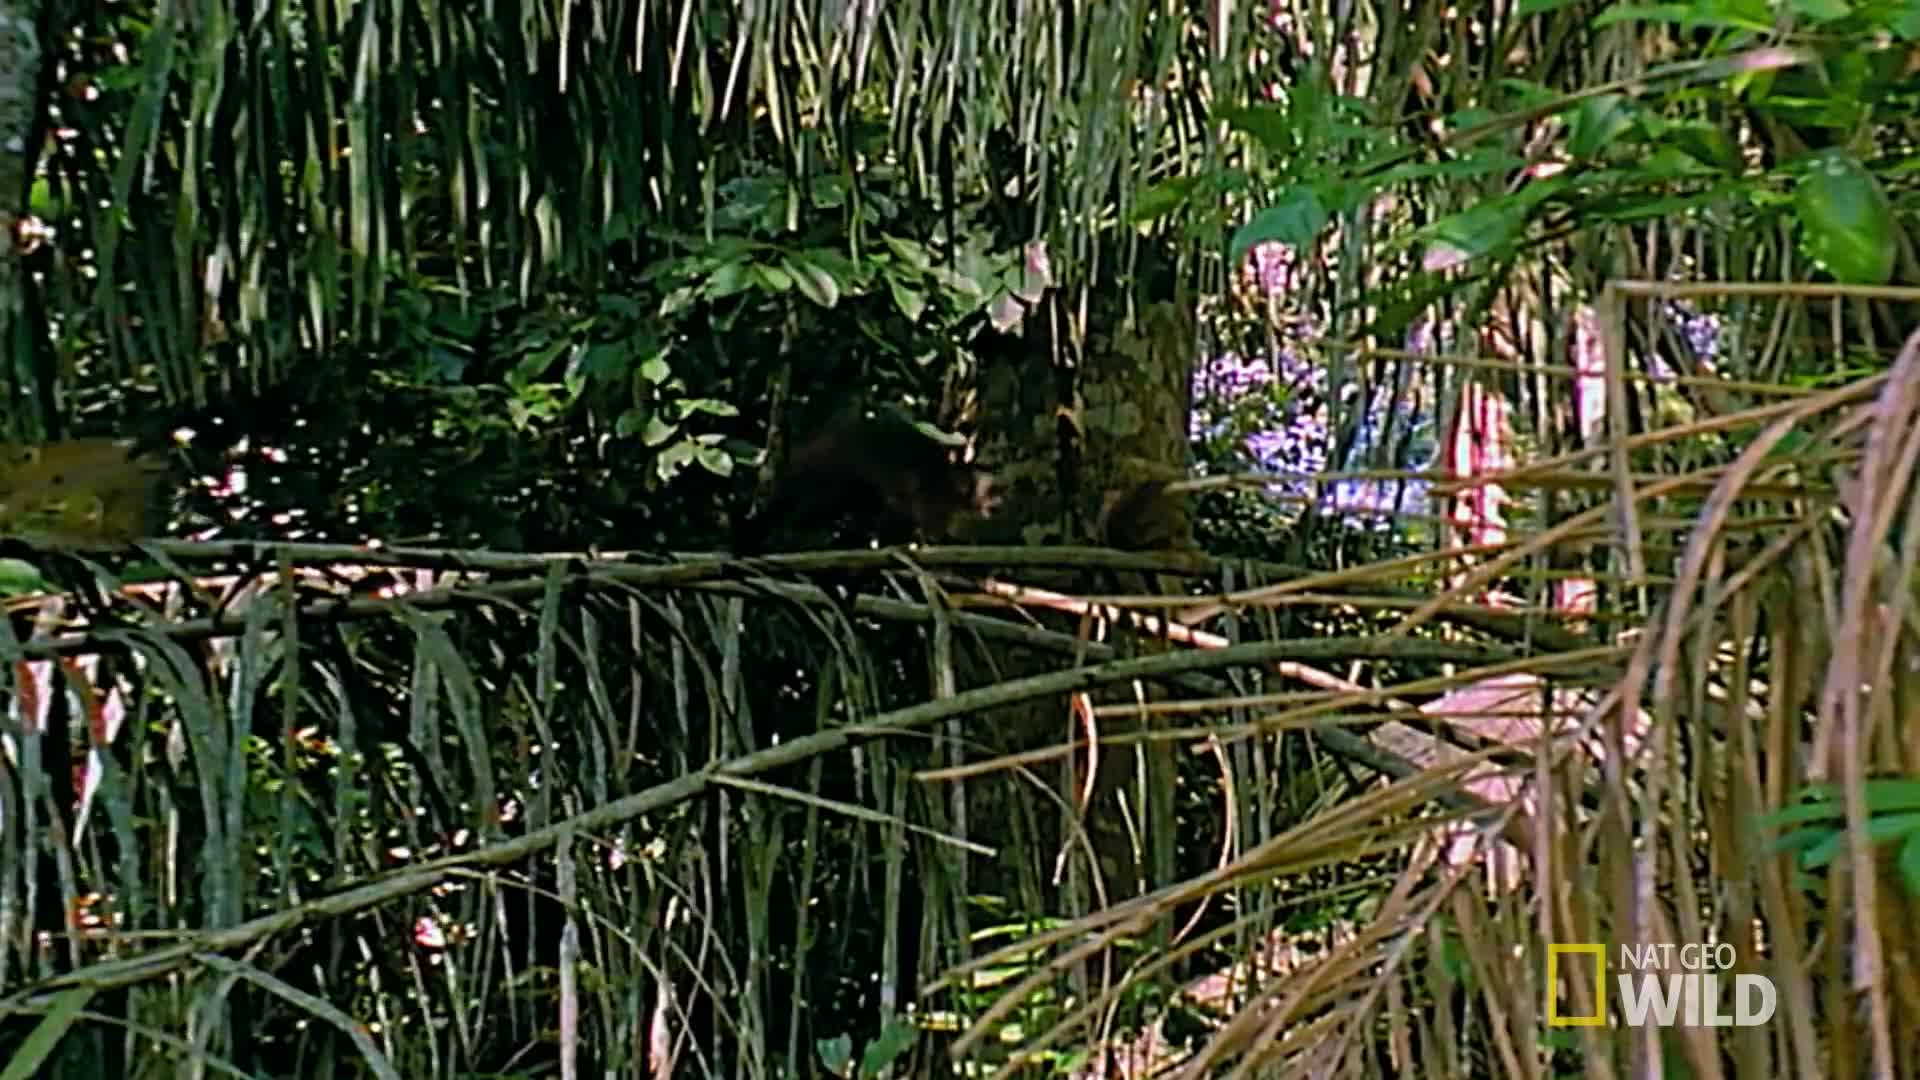 Đại bàng Harpy, nỗi khiếp sợ của những con khỉ trong rừng xanh